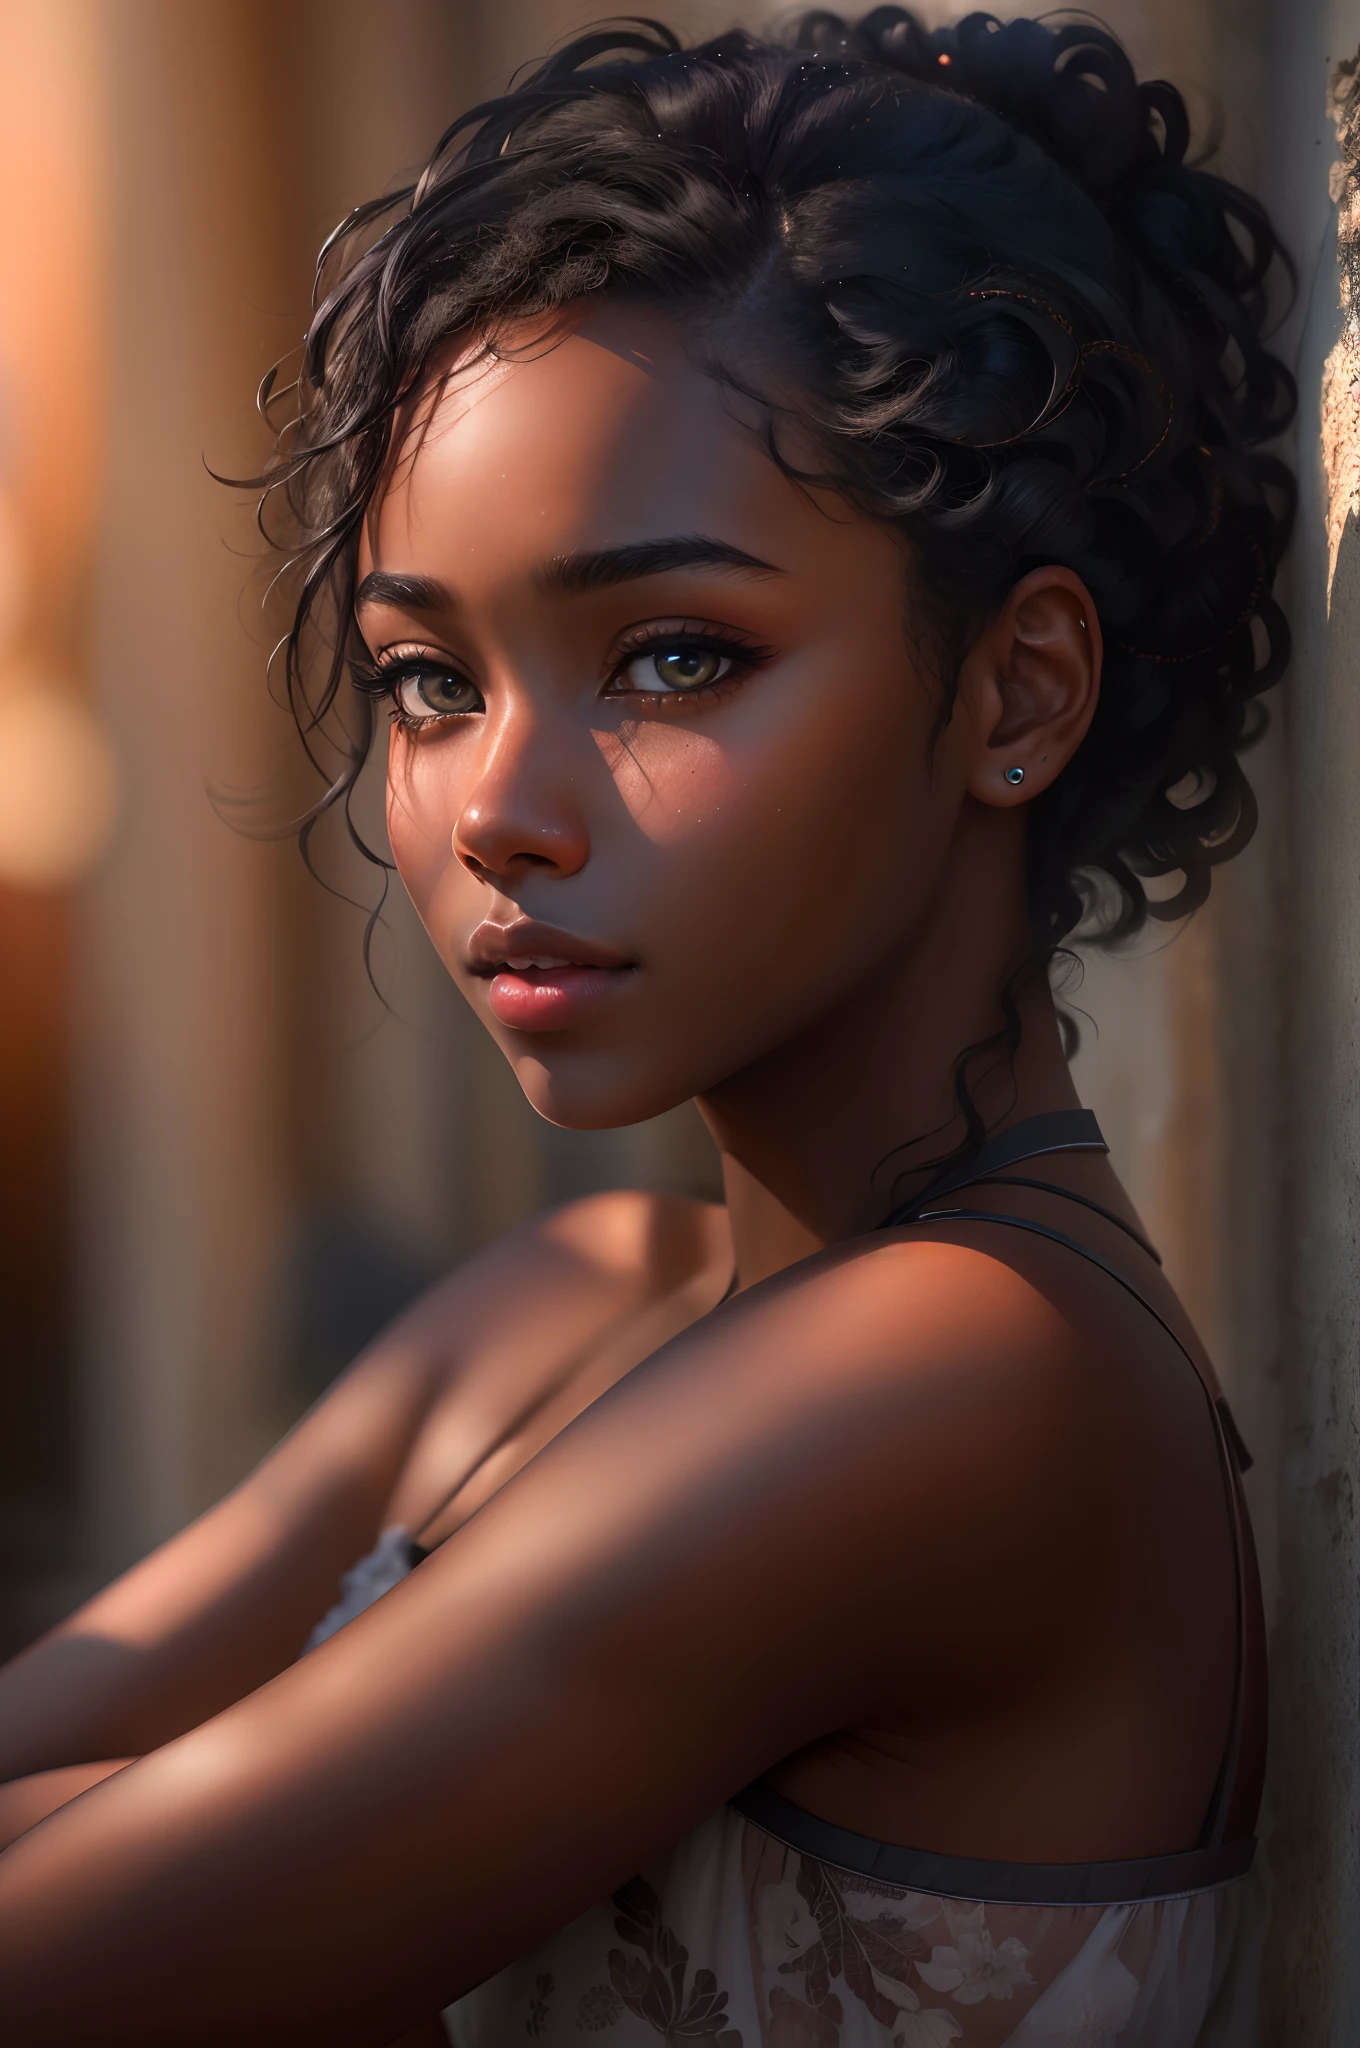 아름다운 흑인 소녀의 사진 8k 초상화, 흑발, 전신, 현실적인, 자연스러운 피부, 부드러운 햇빛, 질감 있는 피부, 뒤얽힌, 우아한, 매우 상세한, 위엄 있는, 디지털 사진, (걸작, 측면 조명, 세밀하게 세밀하게 아름다운 눈: 1.2), HDR,